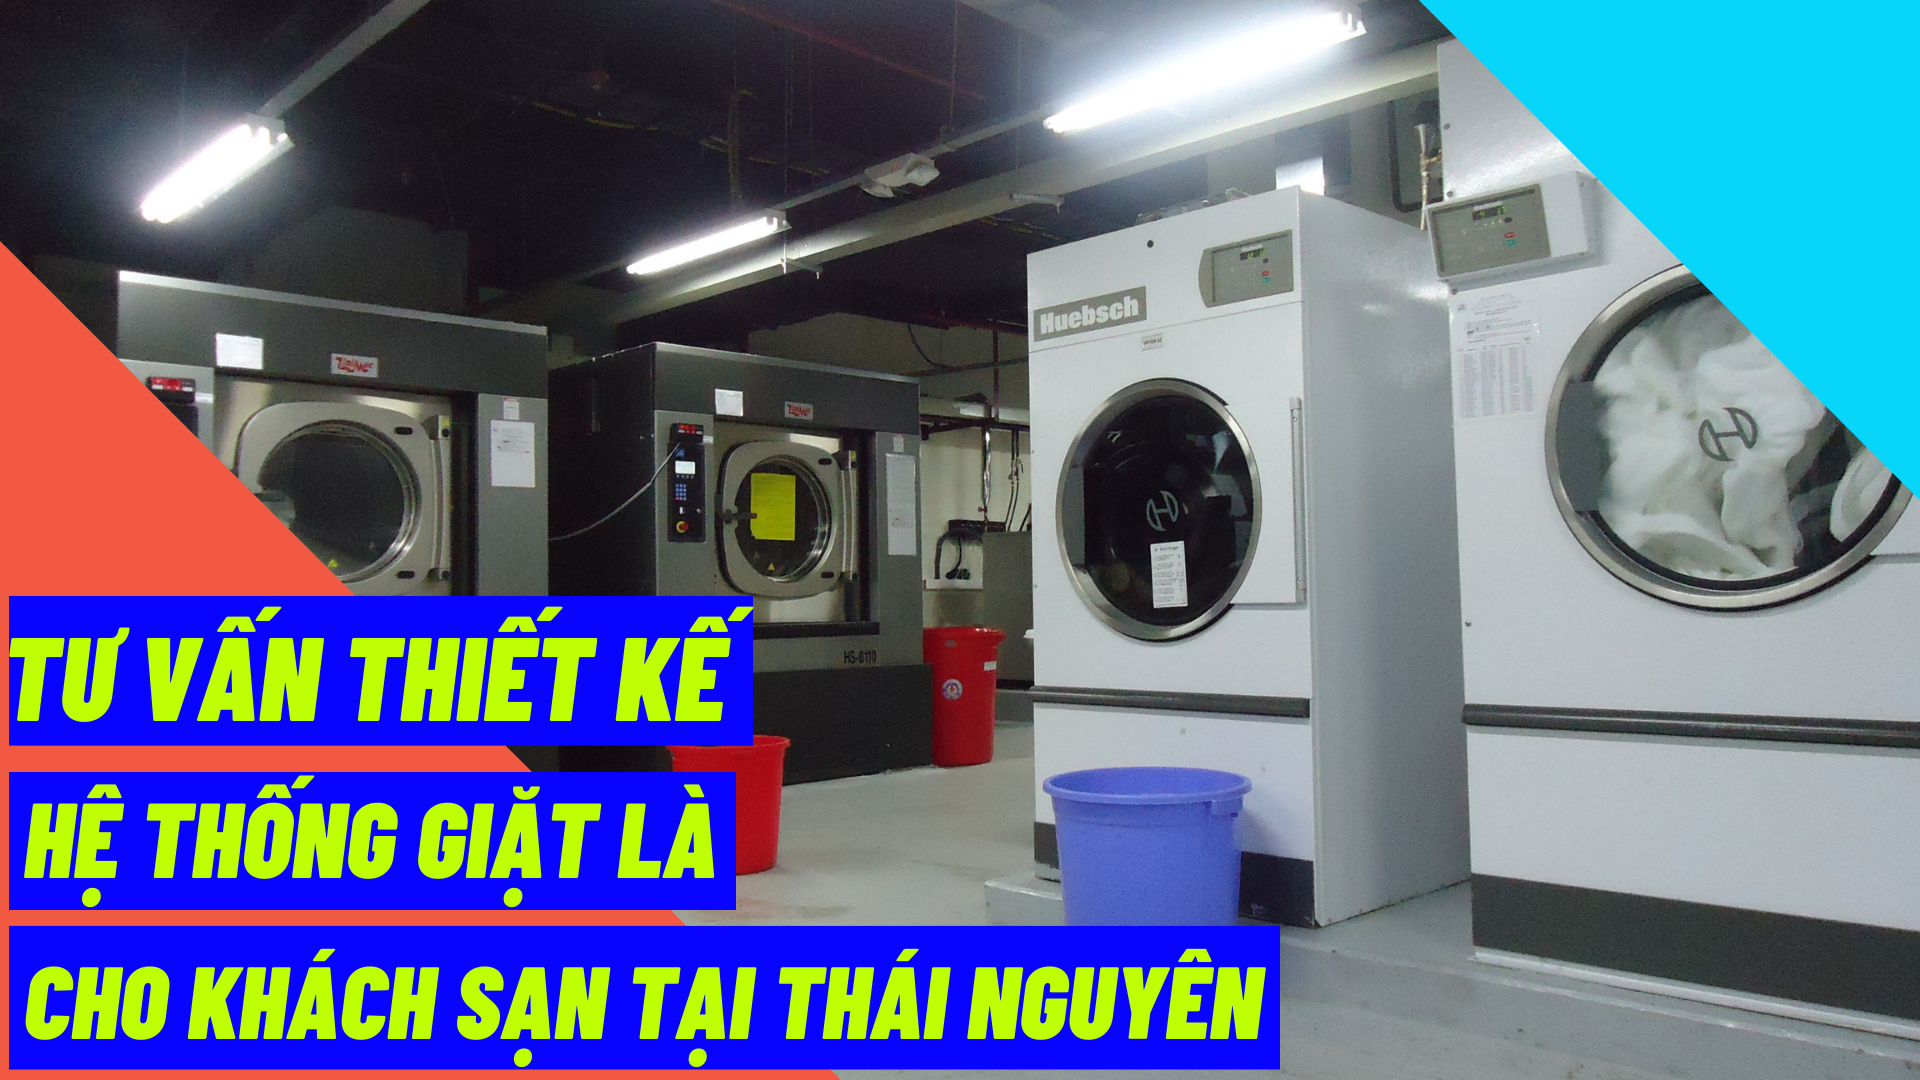 Tư vấn thiết kế hệ thống giặt là cho khách sạn tại Thái Nguyên